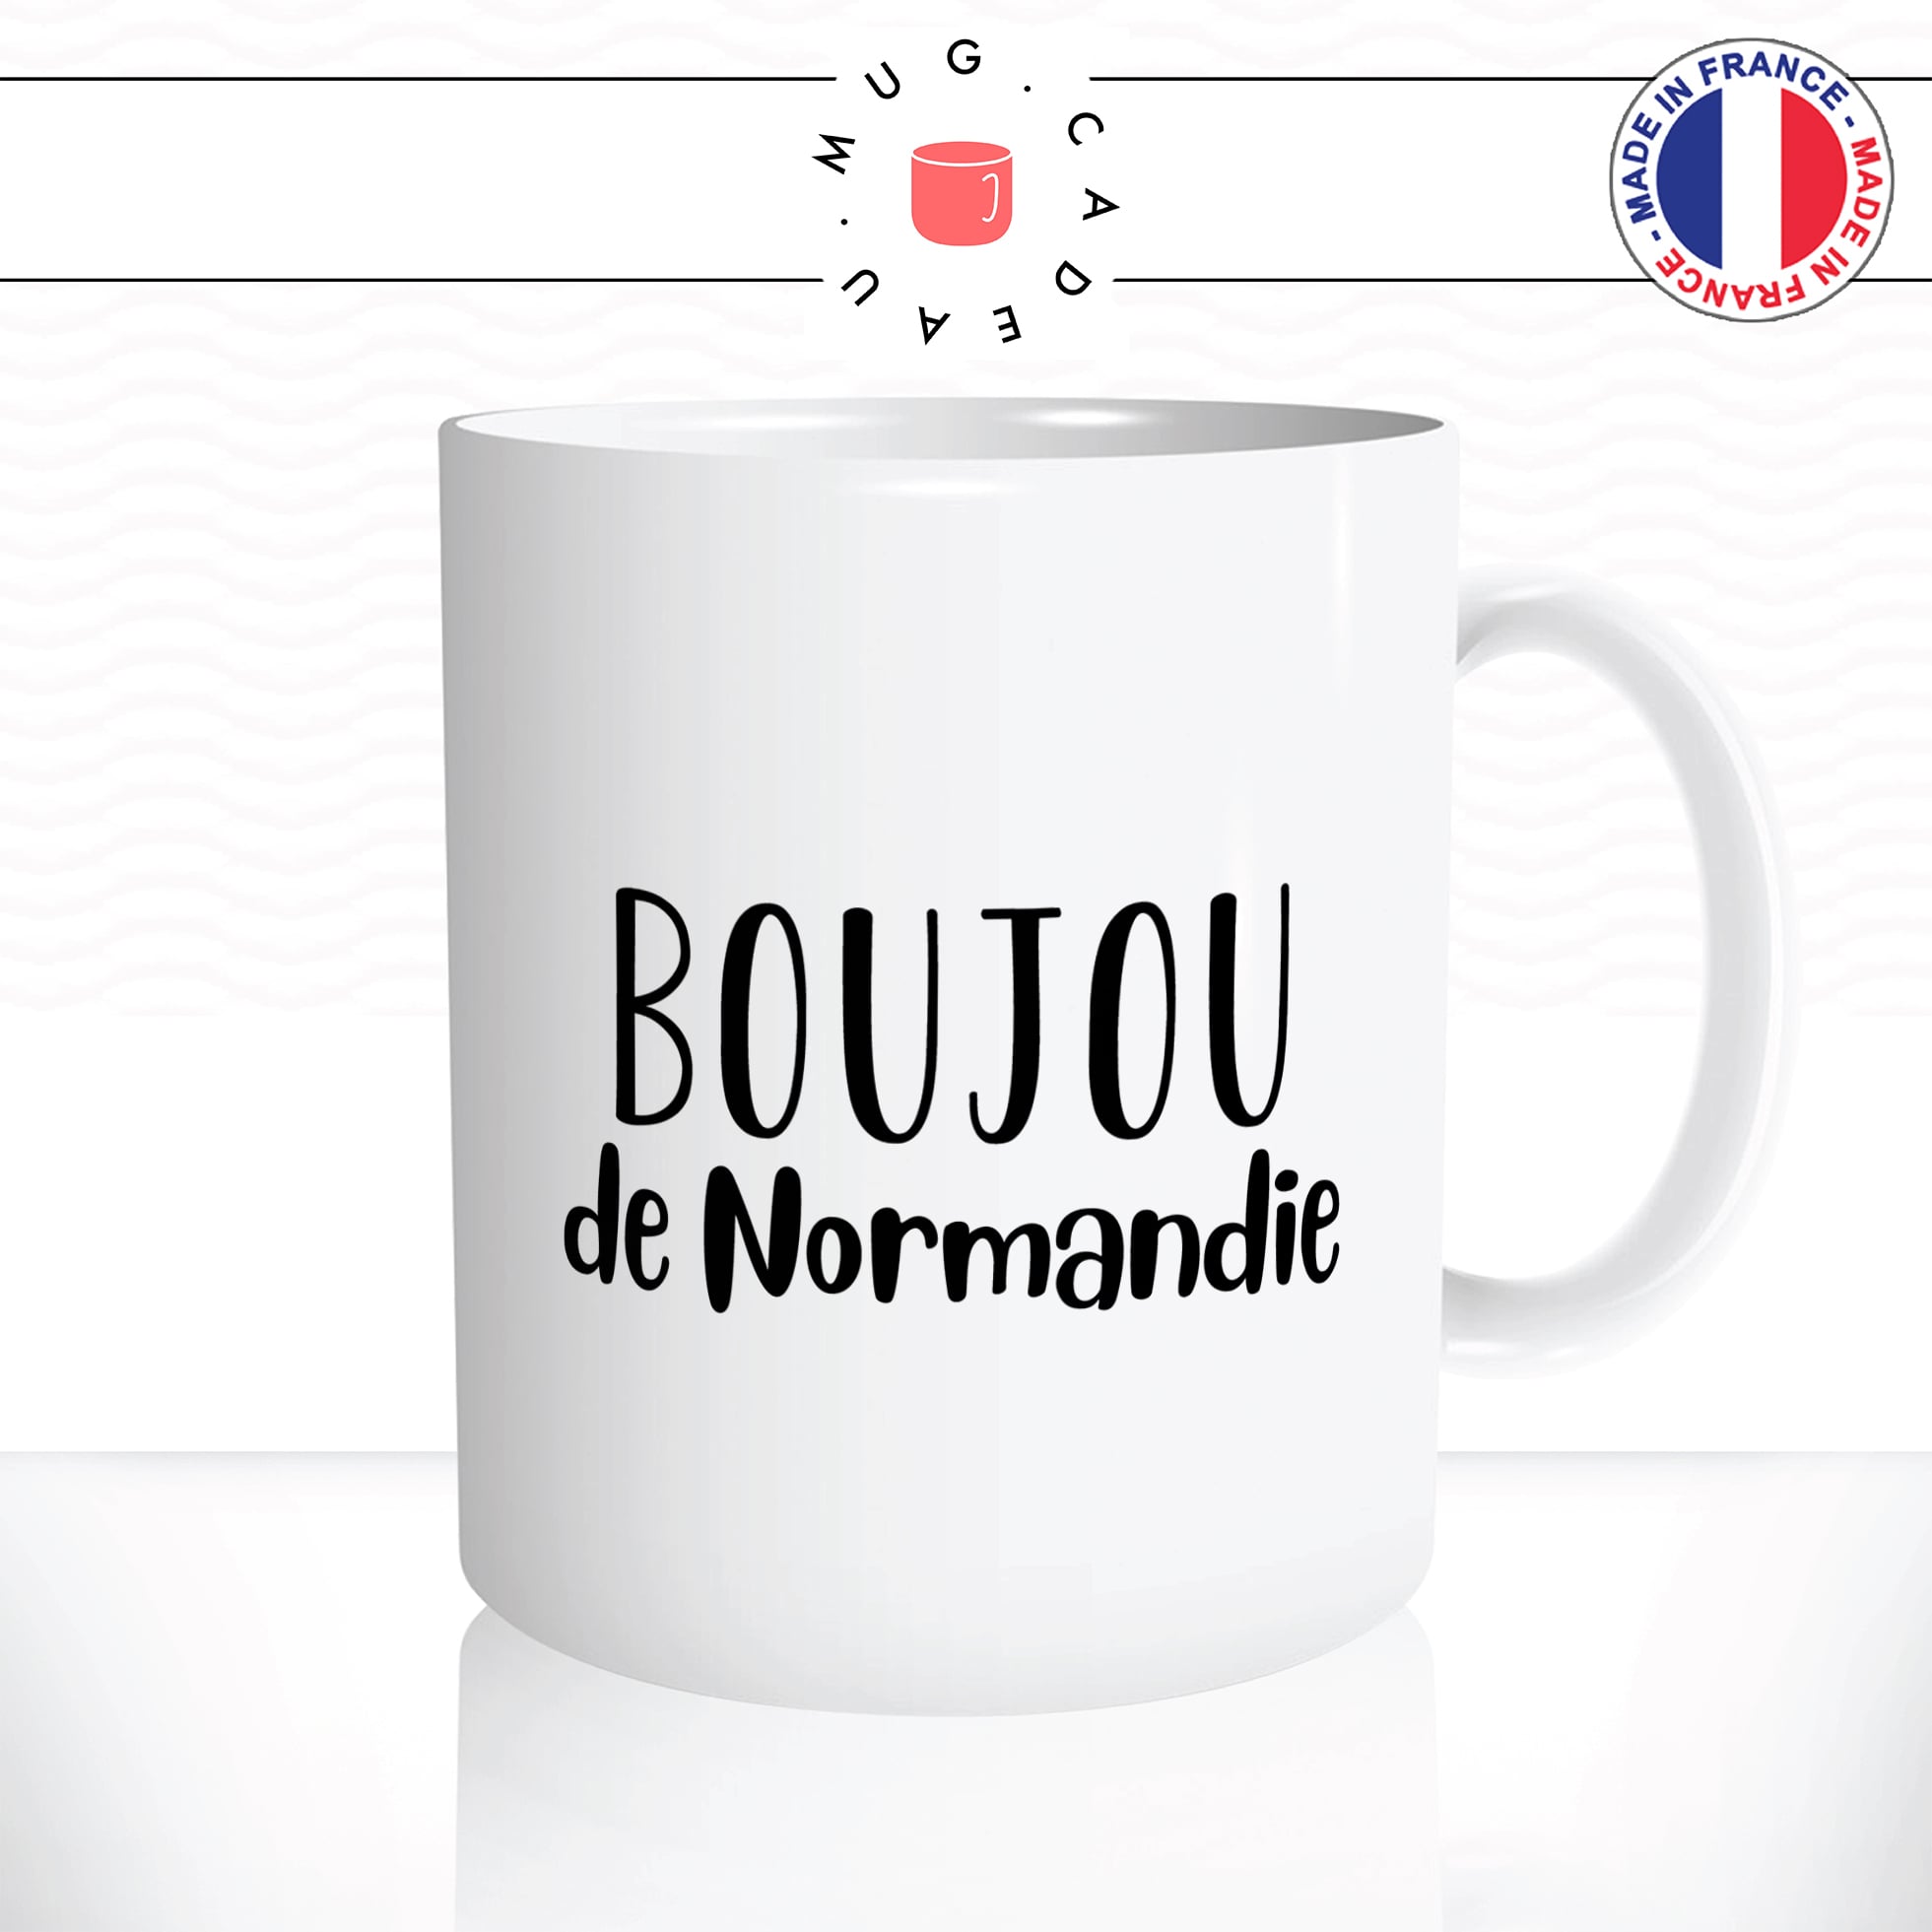 mug-tasse-booujou-de-normandie-normand-france-bisou-bonjour-patois-mignon-fun-café-thé-idée-cadeau-originale-personnalisée2-min